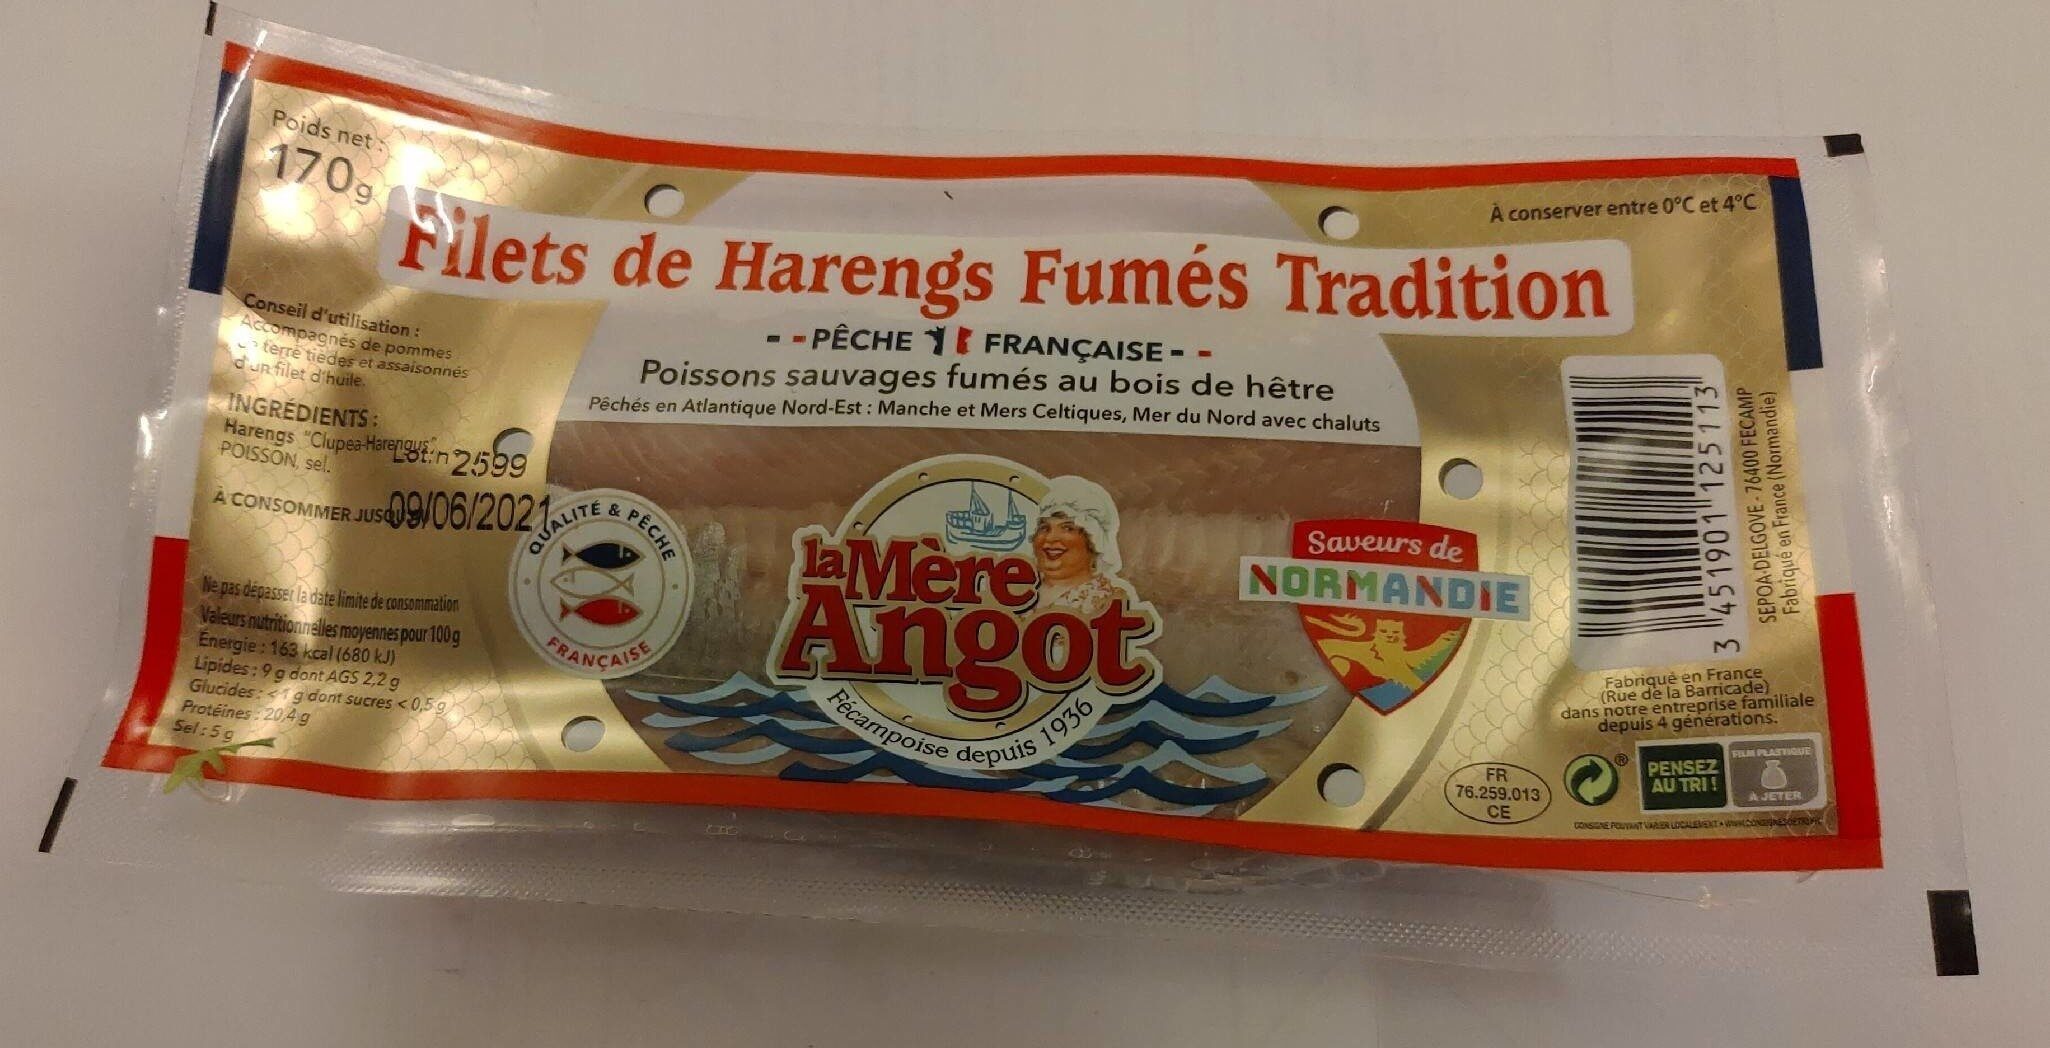 Filets de Harengs Fumés Tradition - Product - fr